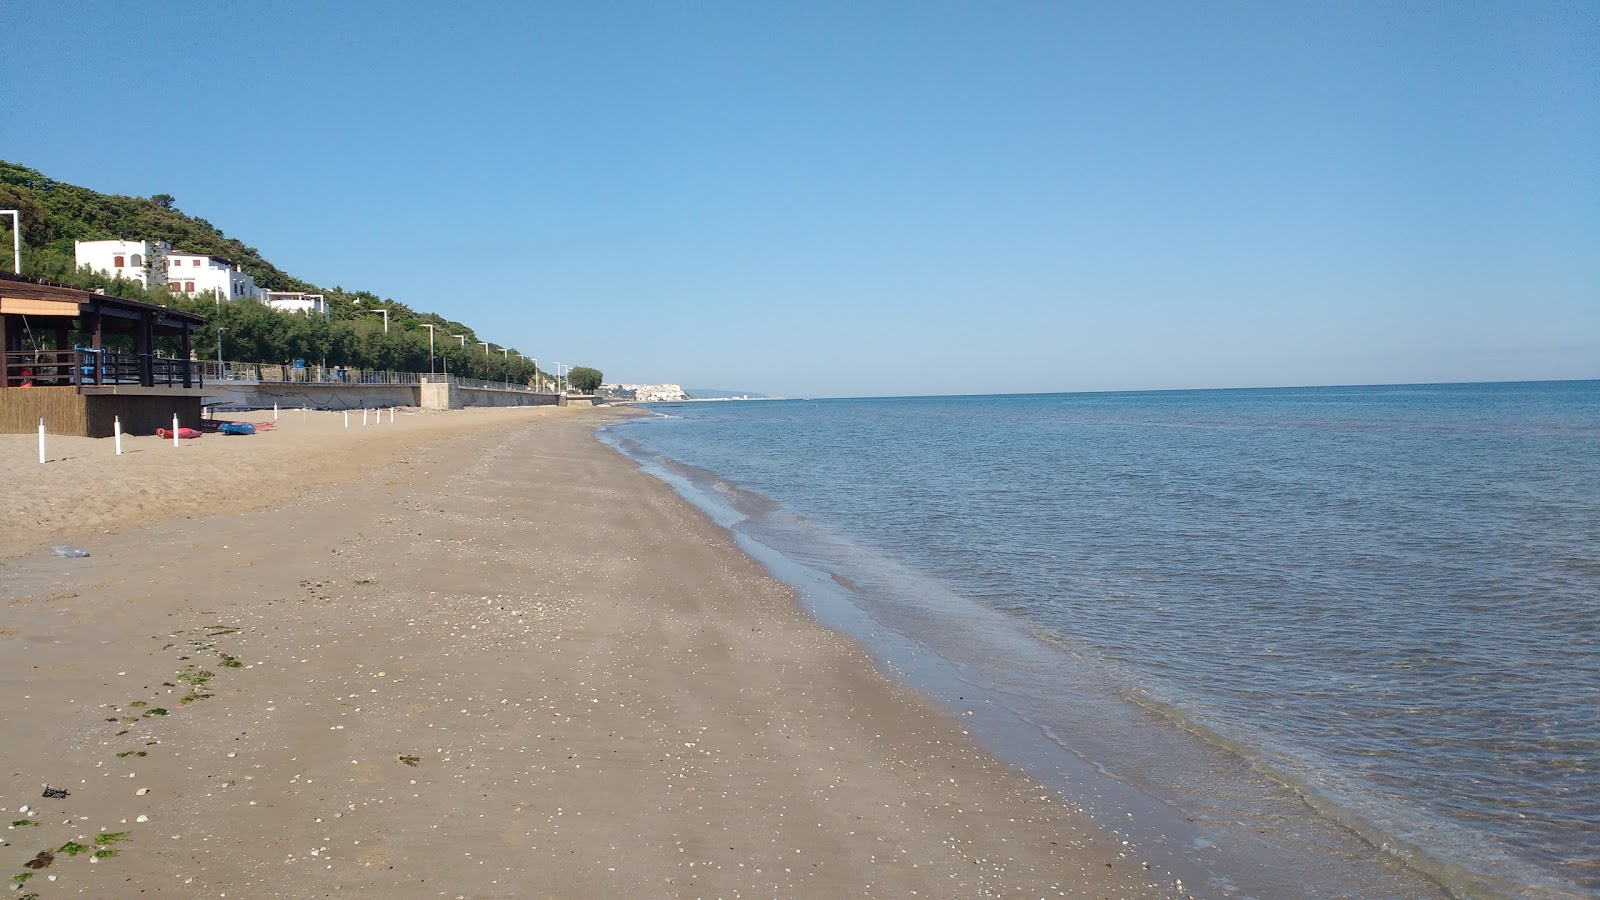 Fotografie cu Spiaggia di San Menaio cu o suprafață de nisip maro